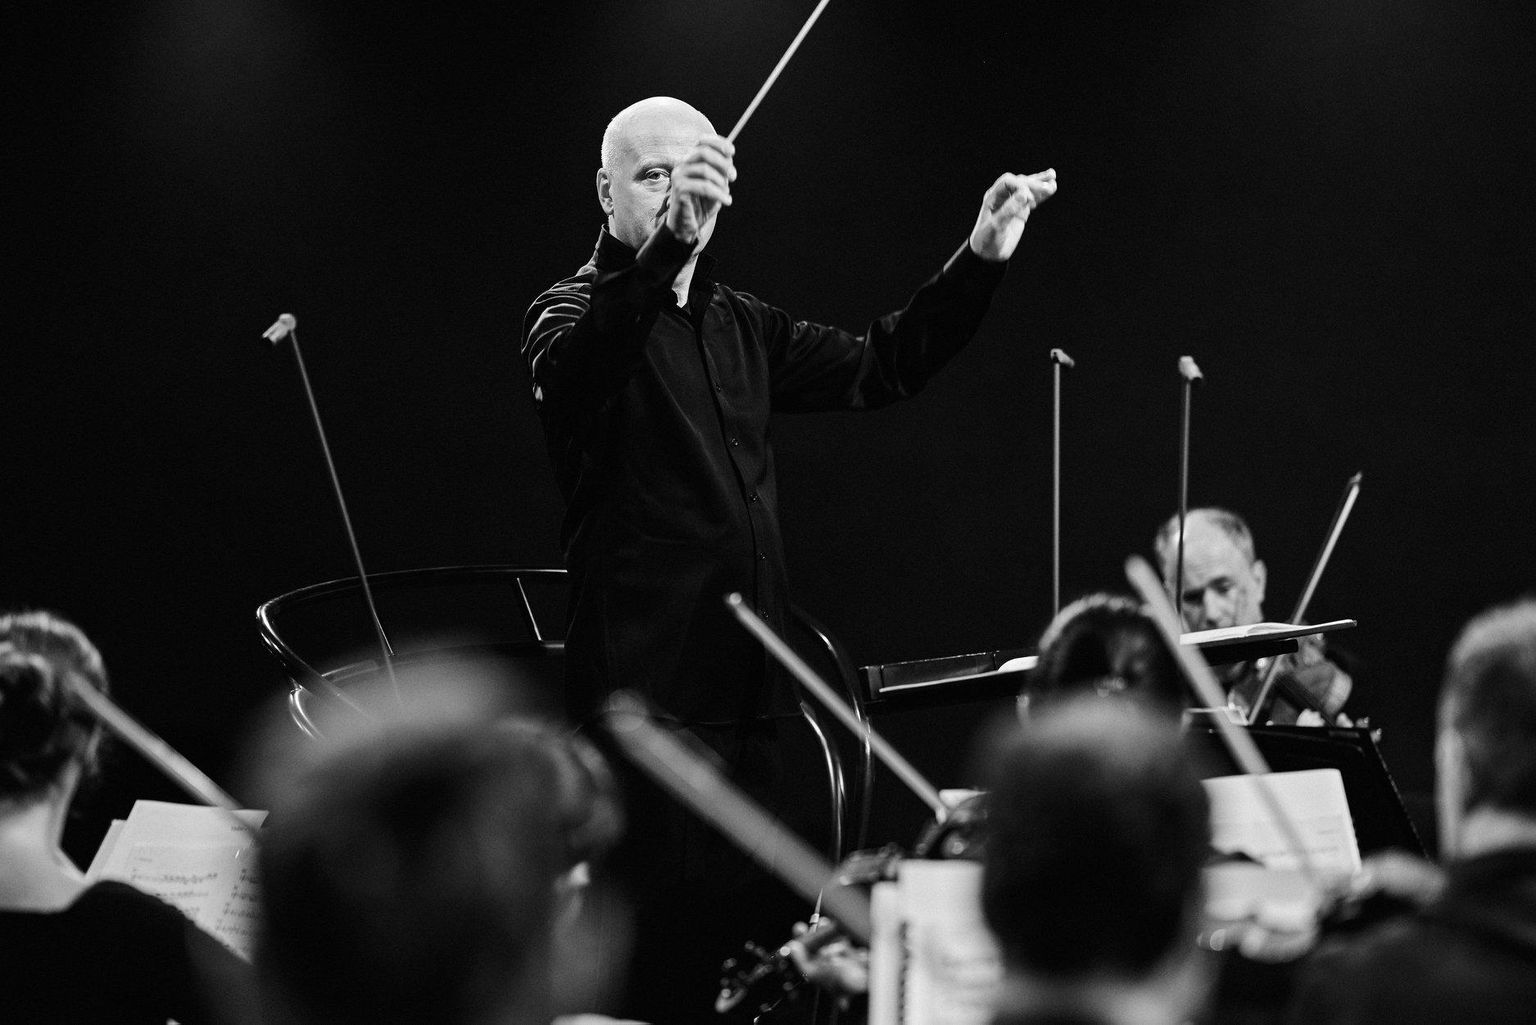 «Mina tahan, et Eesti Festivaliorkester muutuks maailmakultuuri üheks osaks,» tunnistab Paavo Järvi lisades, et orkestri suurimaks missiooniks on Eesti tutuvustamine maailmale.